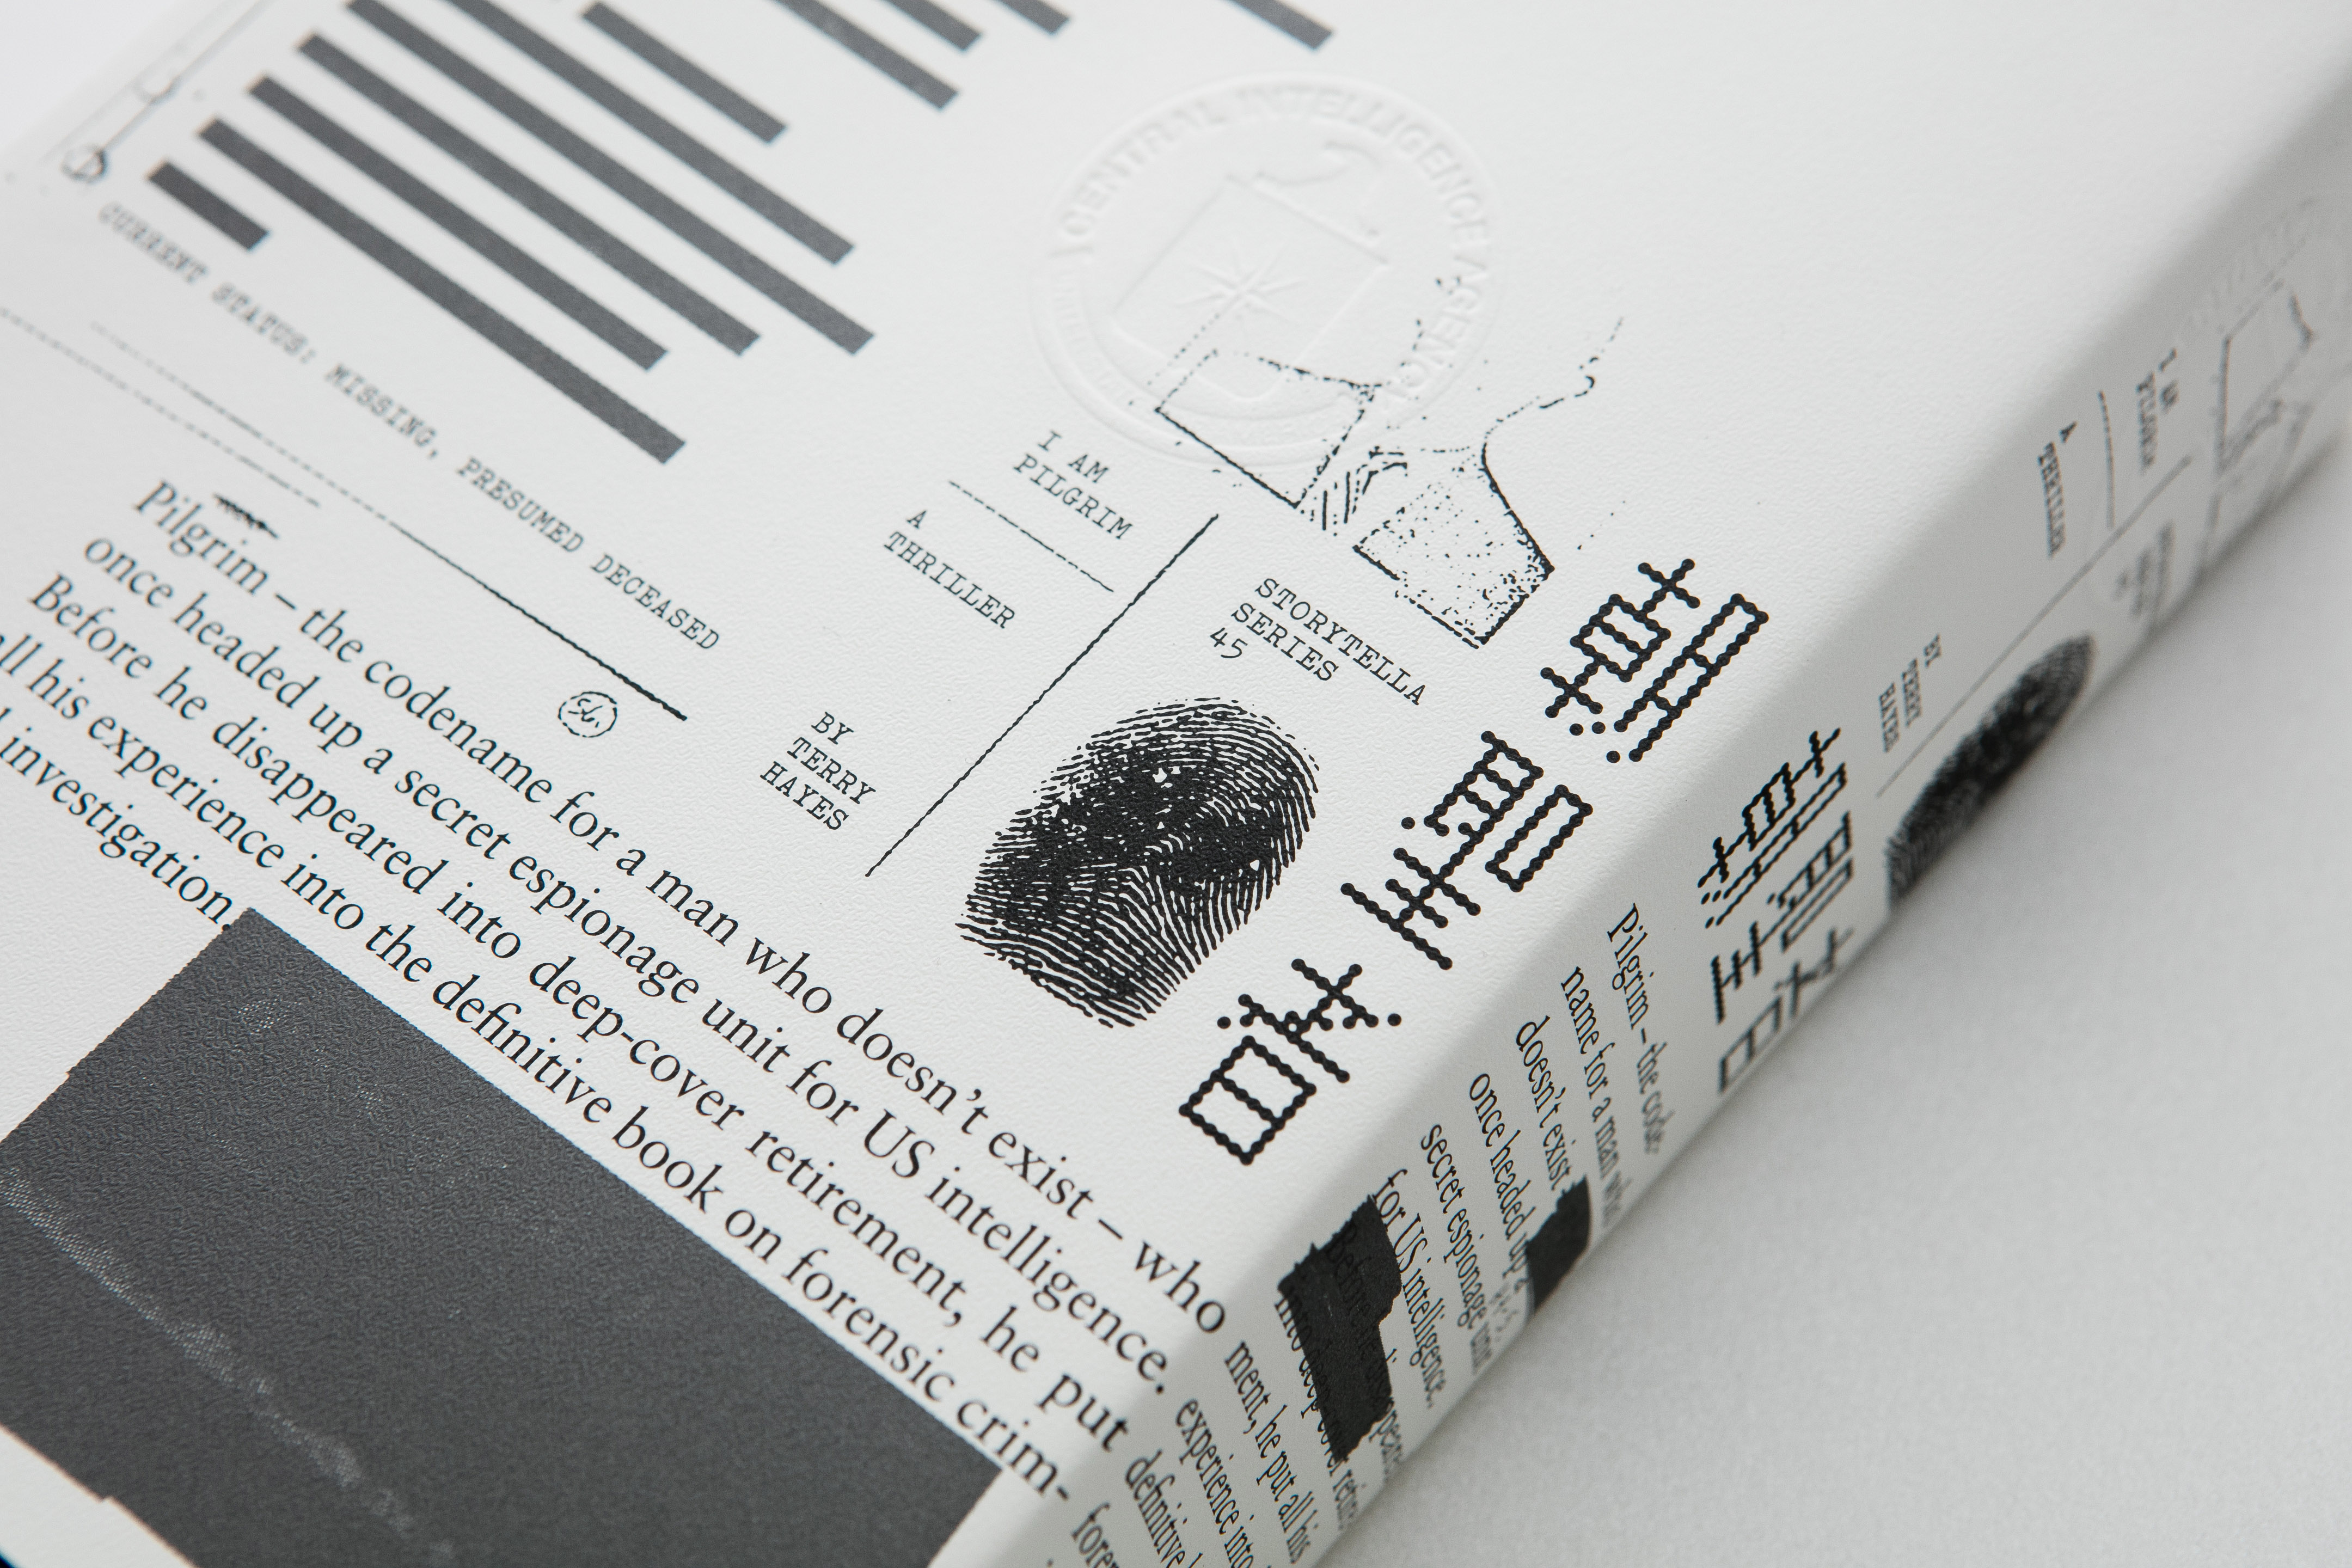 內封選擇類似色調的日本竹尾美術紙，搭配大面積的圖文燙金加工，處理成帶有檔案、公文夾風格的外殼